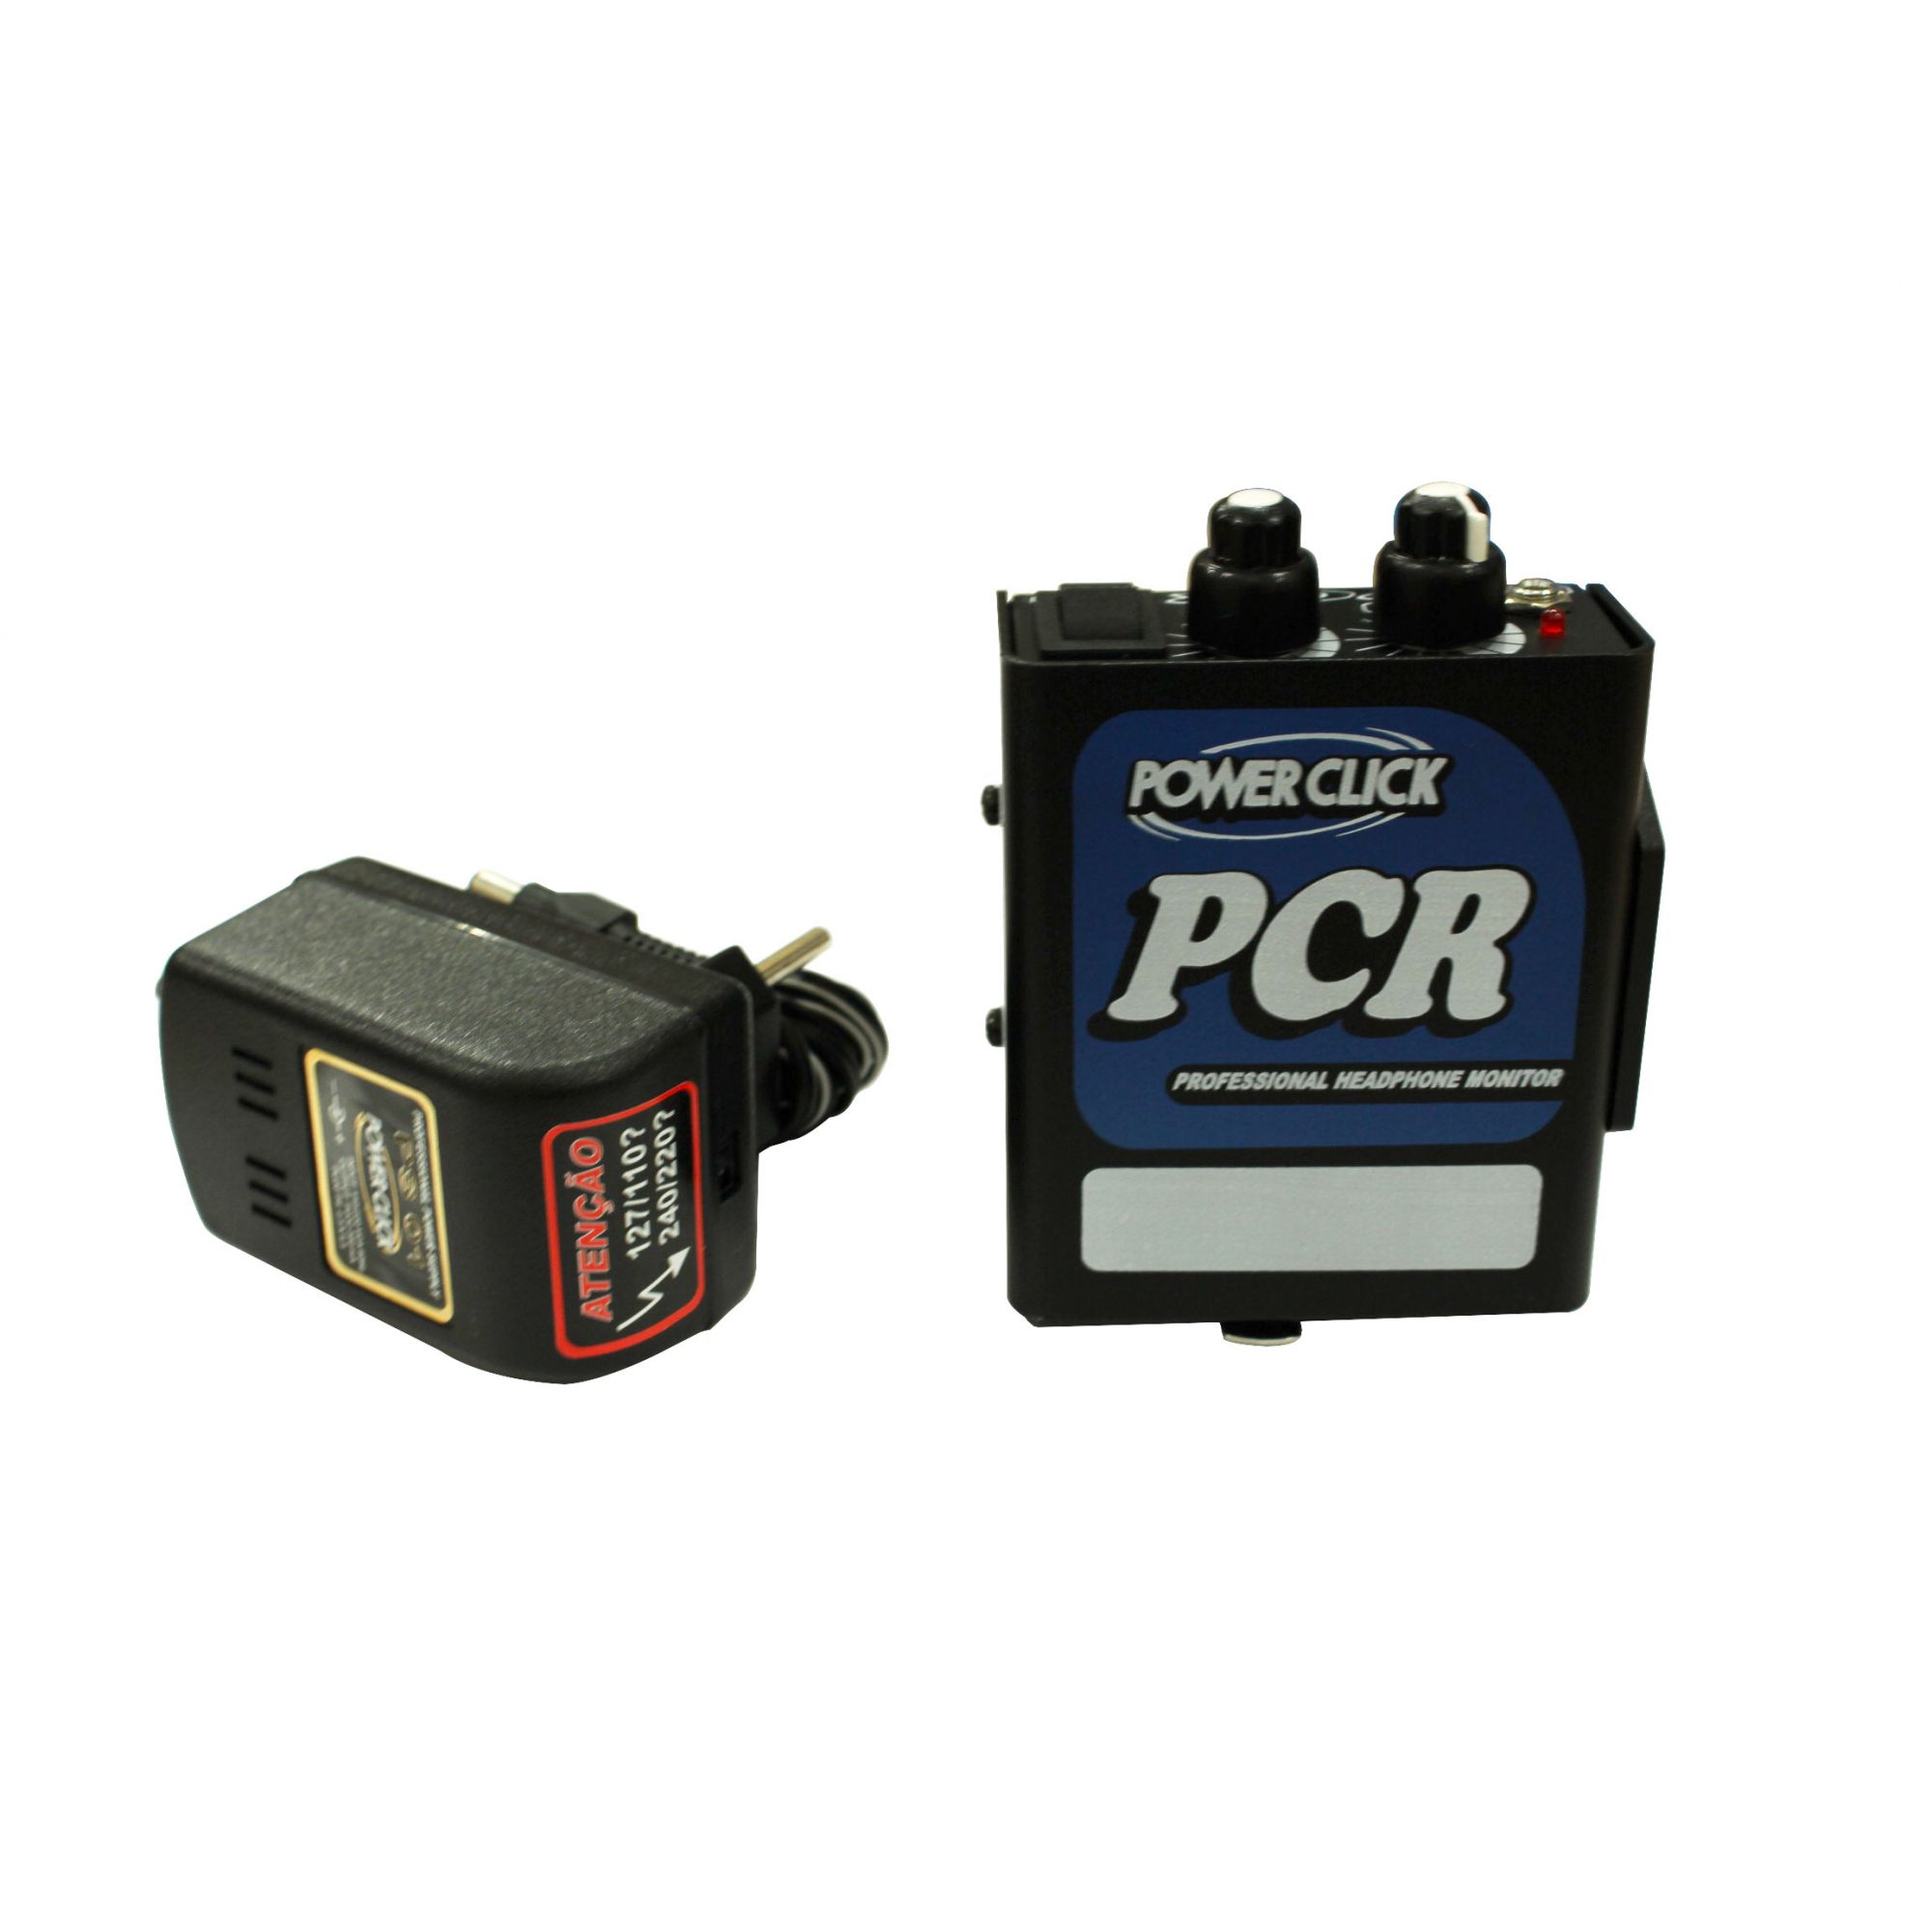 Amplificador para fone com In / Out XLR | Bateria 9v ou Fonte Bivolt já inclusa | Power Click | PCR